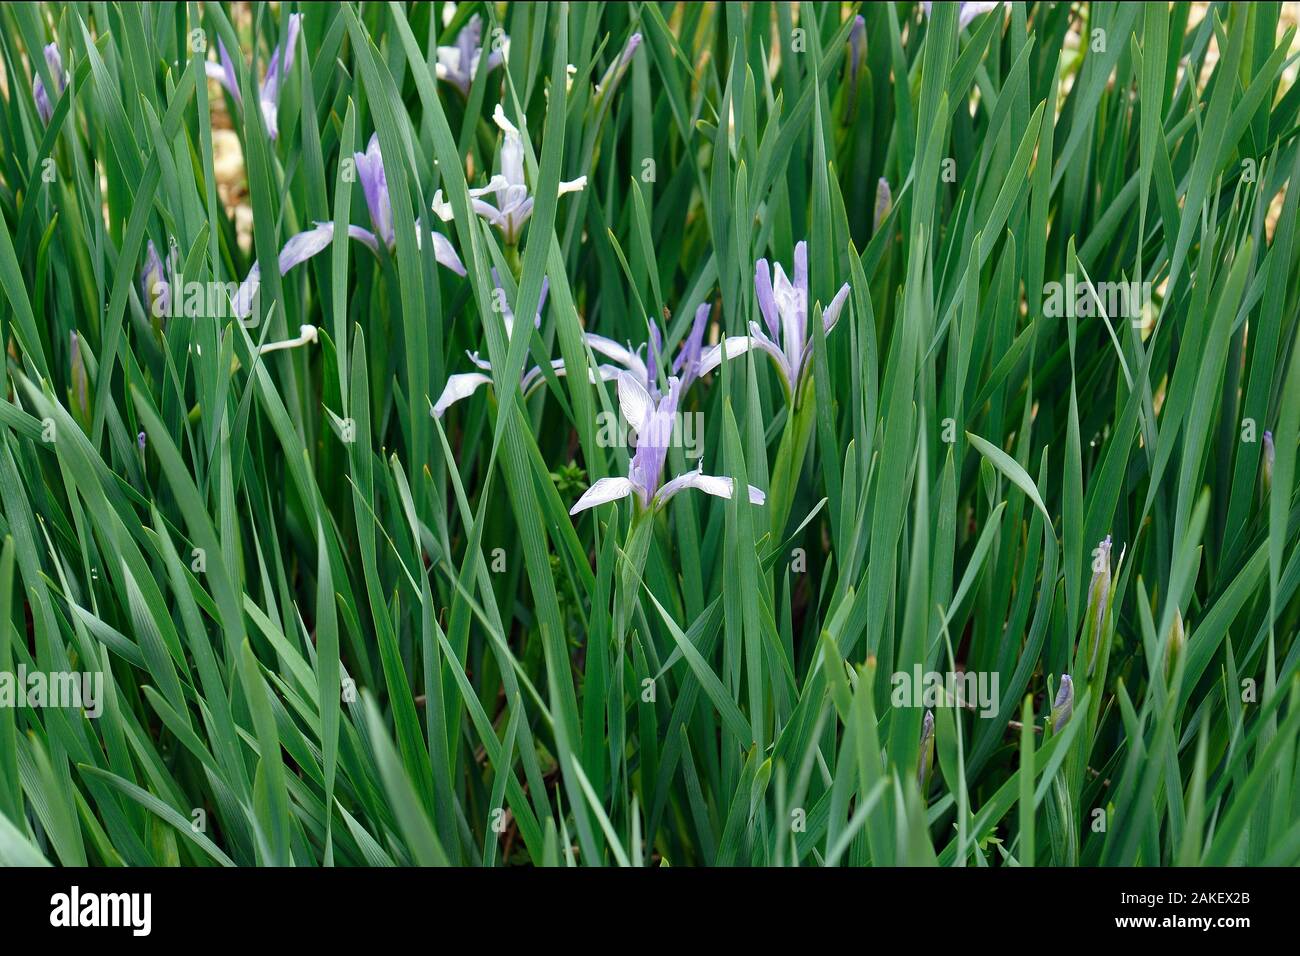 Milky Iris (Iris lactea). Called White flowered iris also. Stock Photo